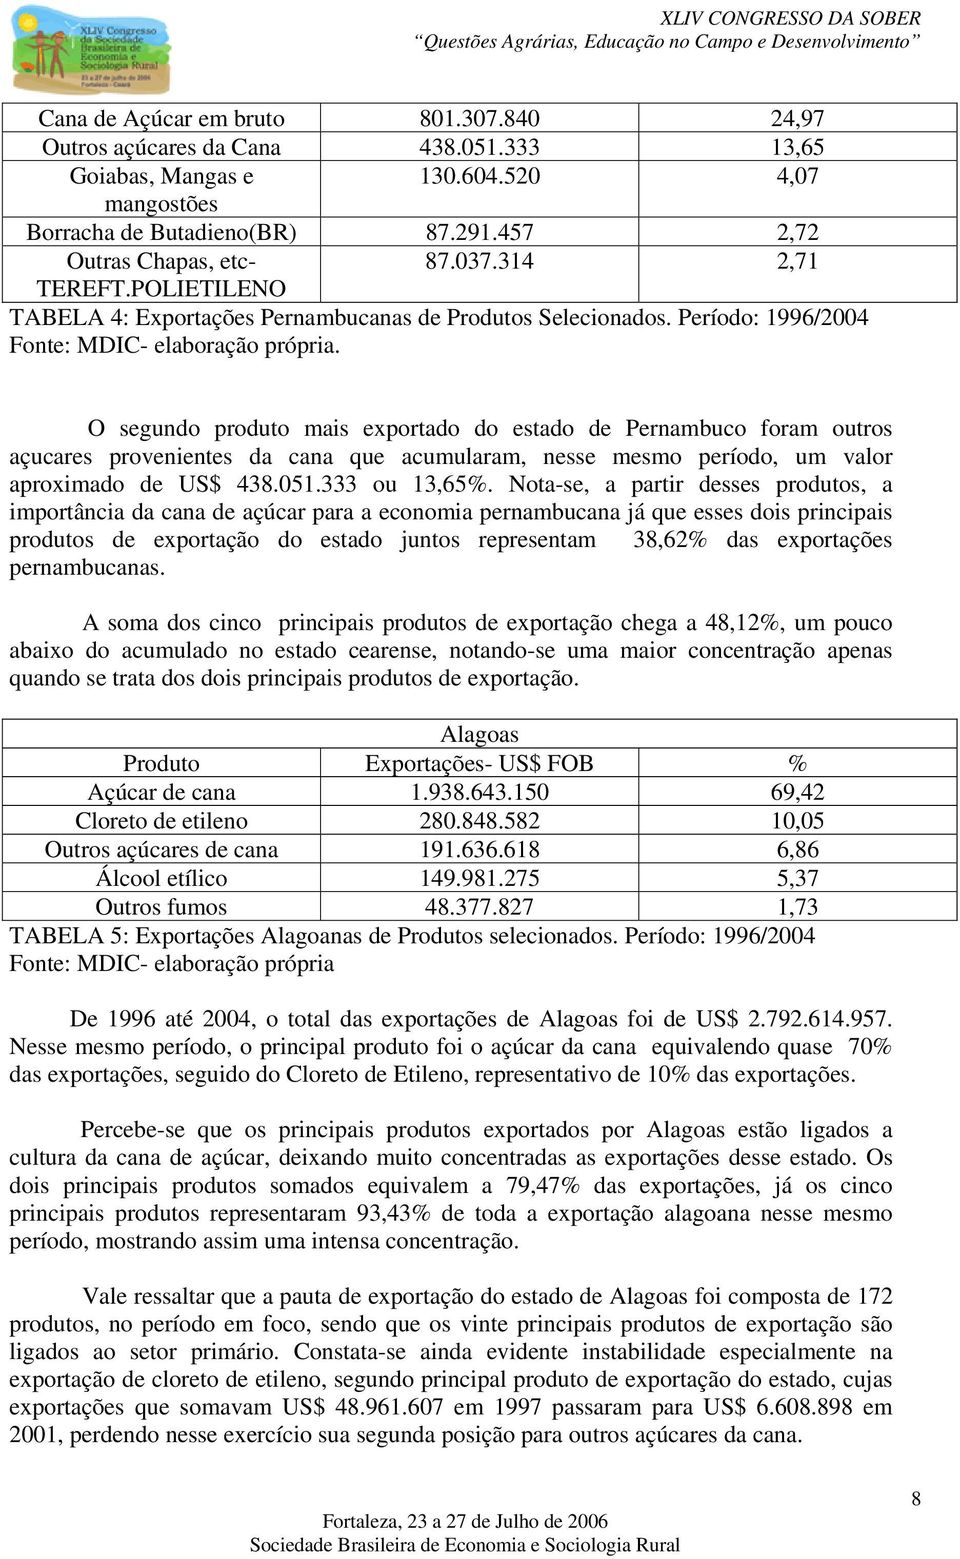 O segundo produto mais exportado do estado de Pernambuco foram outros açucares provenientes da cana que acumularam, nesse mesmo período, um valor aproximado de US$ 438.051.333 ou 13,65%.